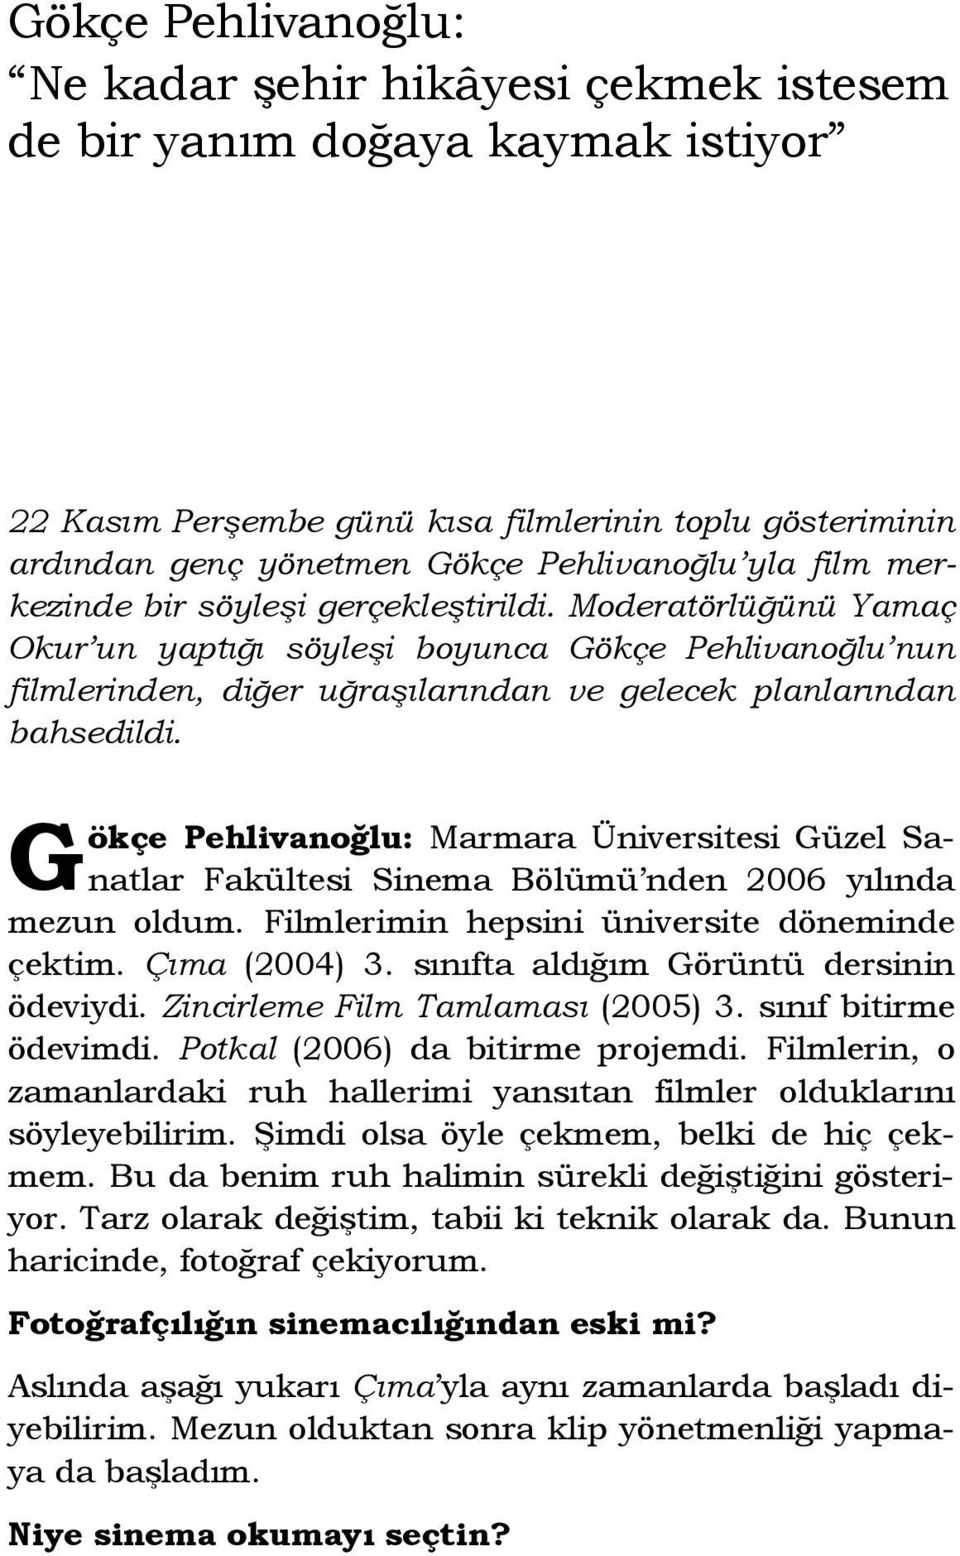 G ökçe Pehlivanoğlu: Marmara Üniversitesi Güzel Sanatlar Fakültesi Sinema Bölümü nden 2006 yılında mezun oldum. Filmlerimin hepsini üniversite döneminde çektim. Çıma (2004) 3.